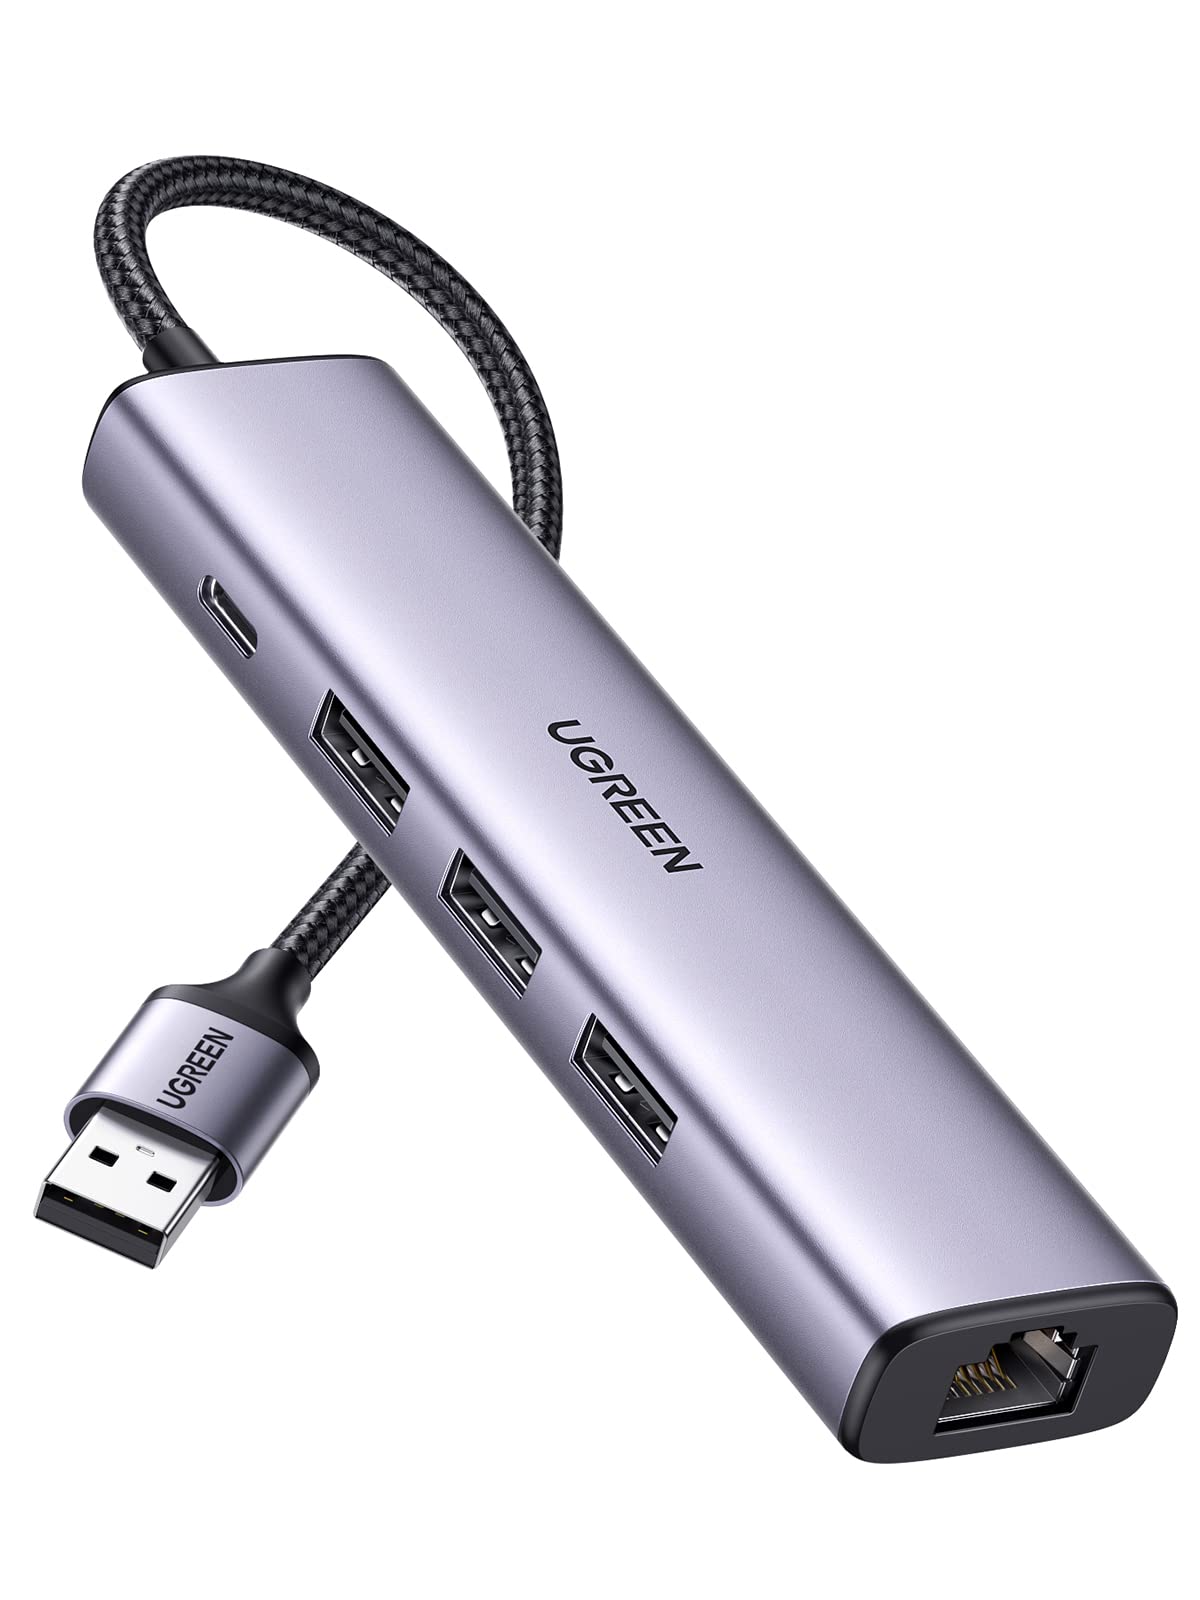 UGREEN USB 3.0 有線LANアダプター スイッチ 1000Mbps 5-in-1 3*USBポート USB-C給電ポート USBハブ ギガビット RJ45 ノートパソコン PC